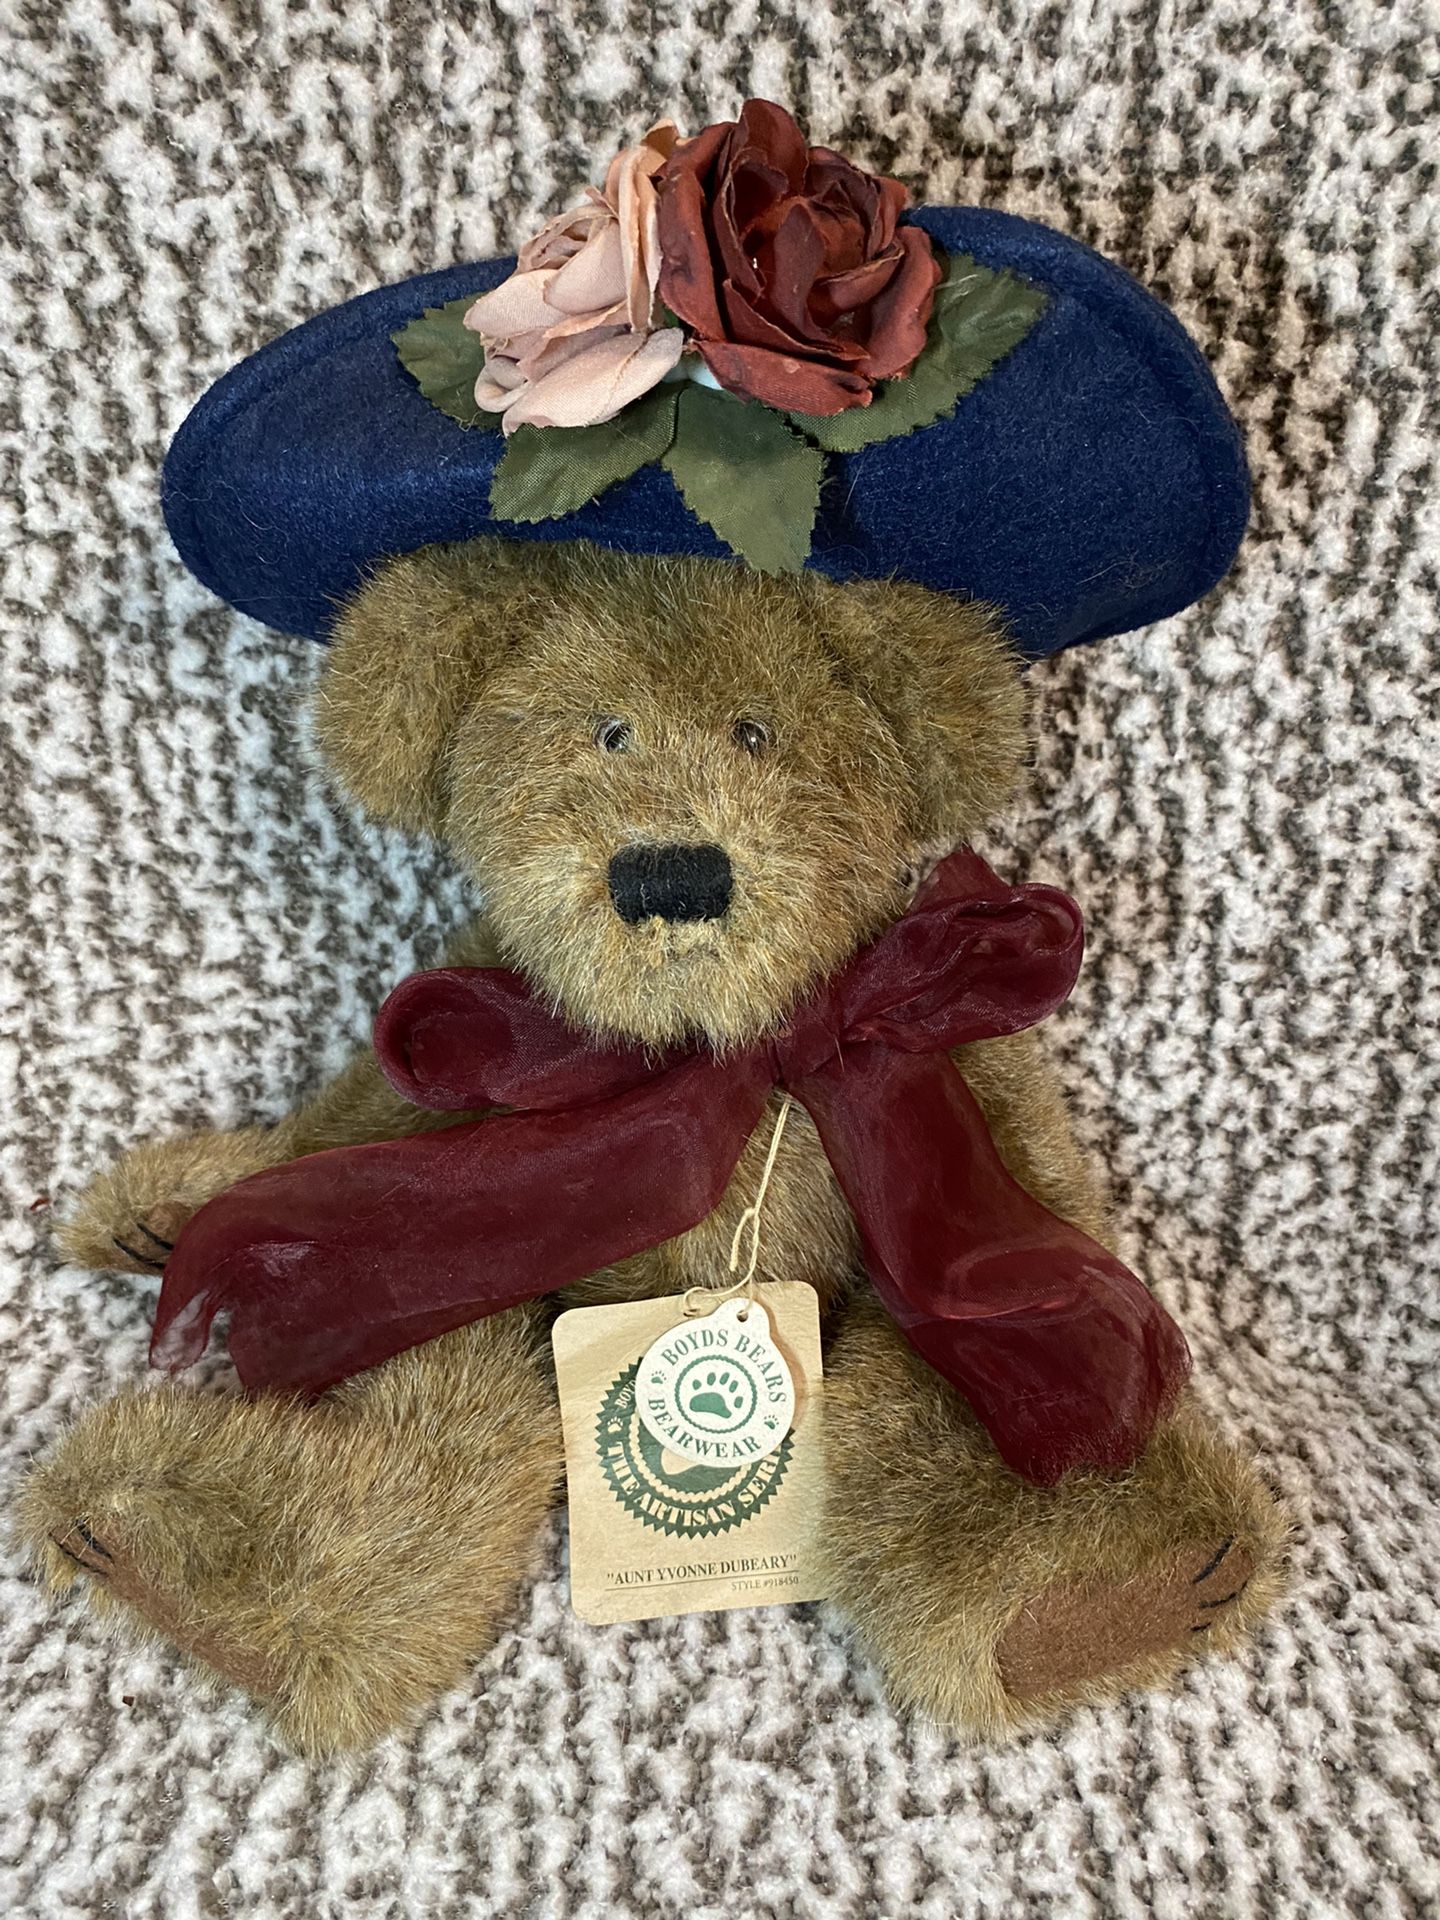 Boyds Bears Aunt Yvonne Dubeary Stuffed Animal